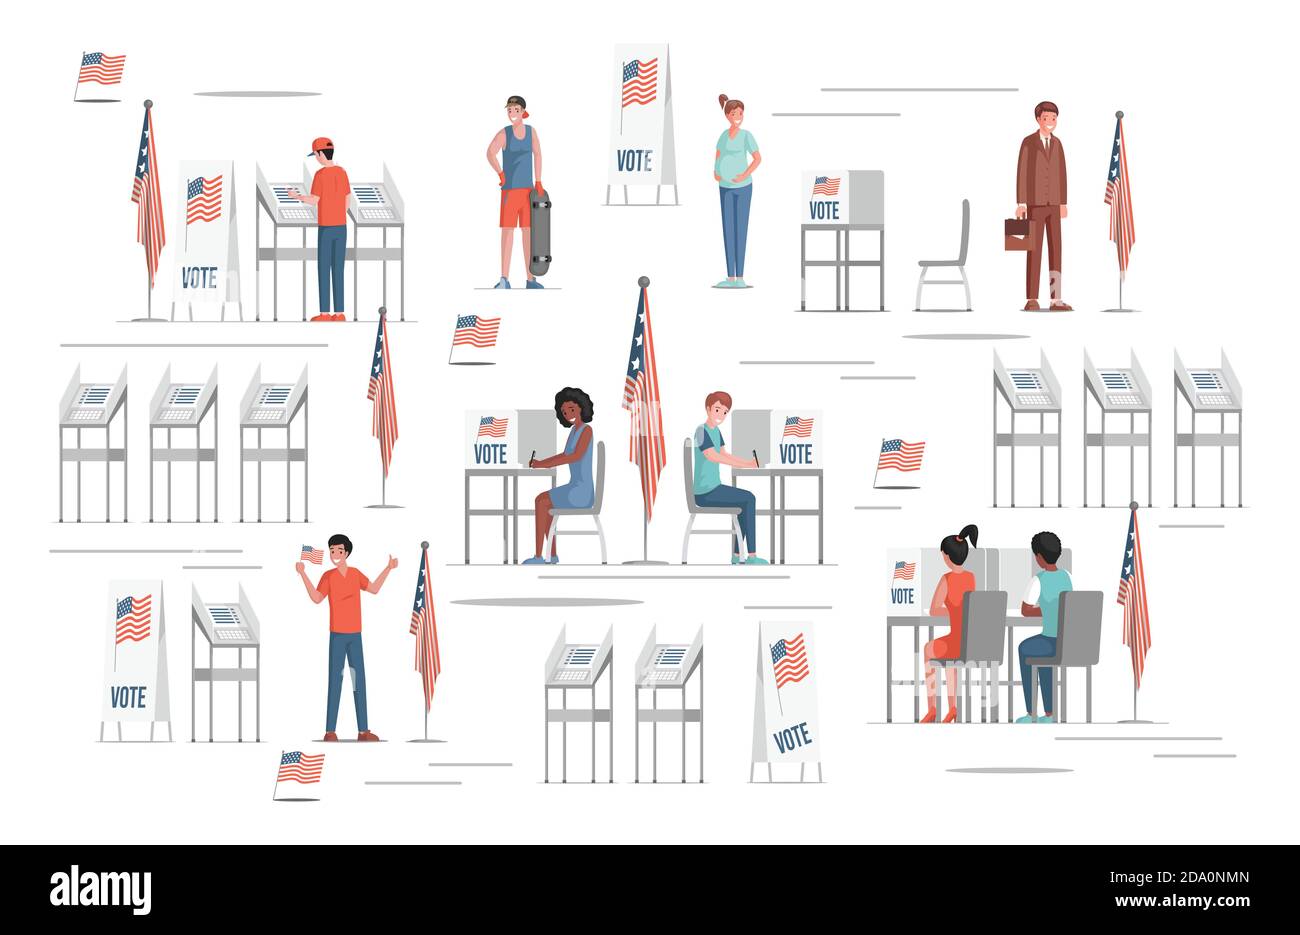 Des gens souriants et heureux votant pour les élections dans l'illustration vectorielle plate des États-Unis. Bureaux de vote, drapeaux des États-Unis d'Amérique. Personnes qui choisissent des candidats sur des bulletins de vote papier. Concept d'élections démocratiques. Illustration de Vecteur